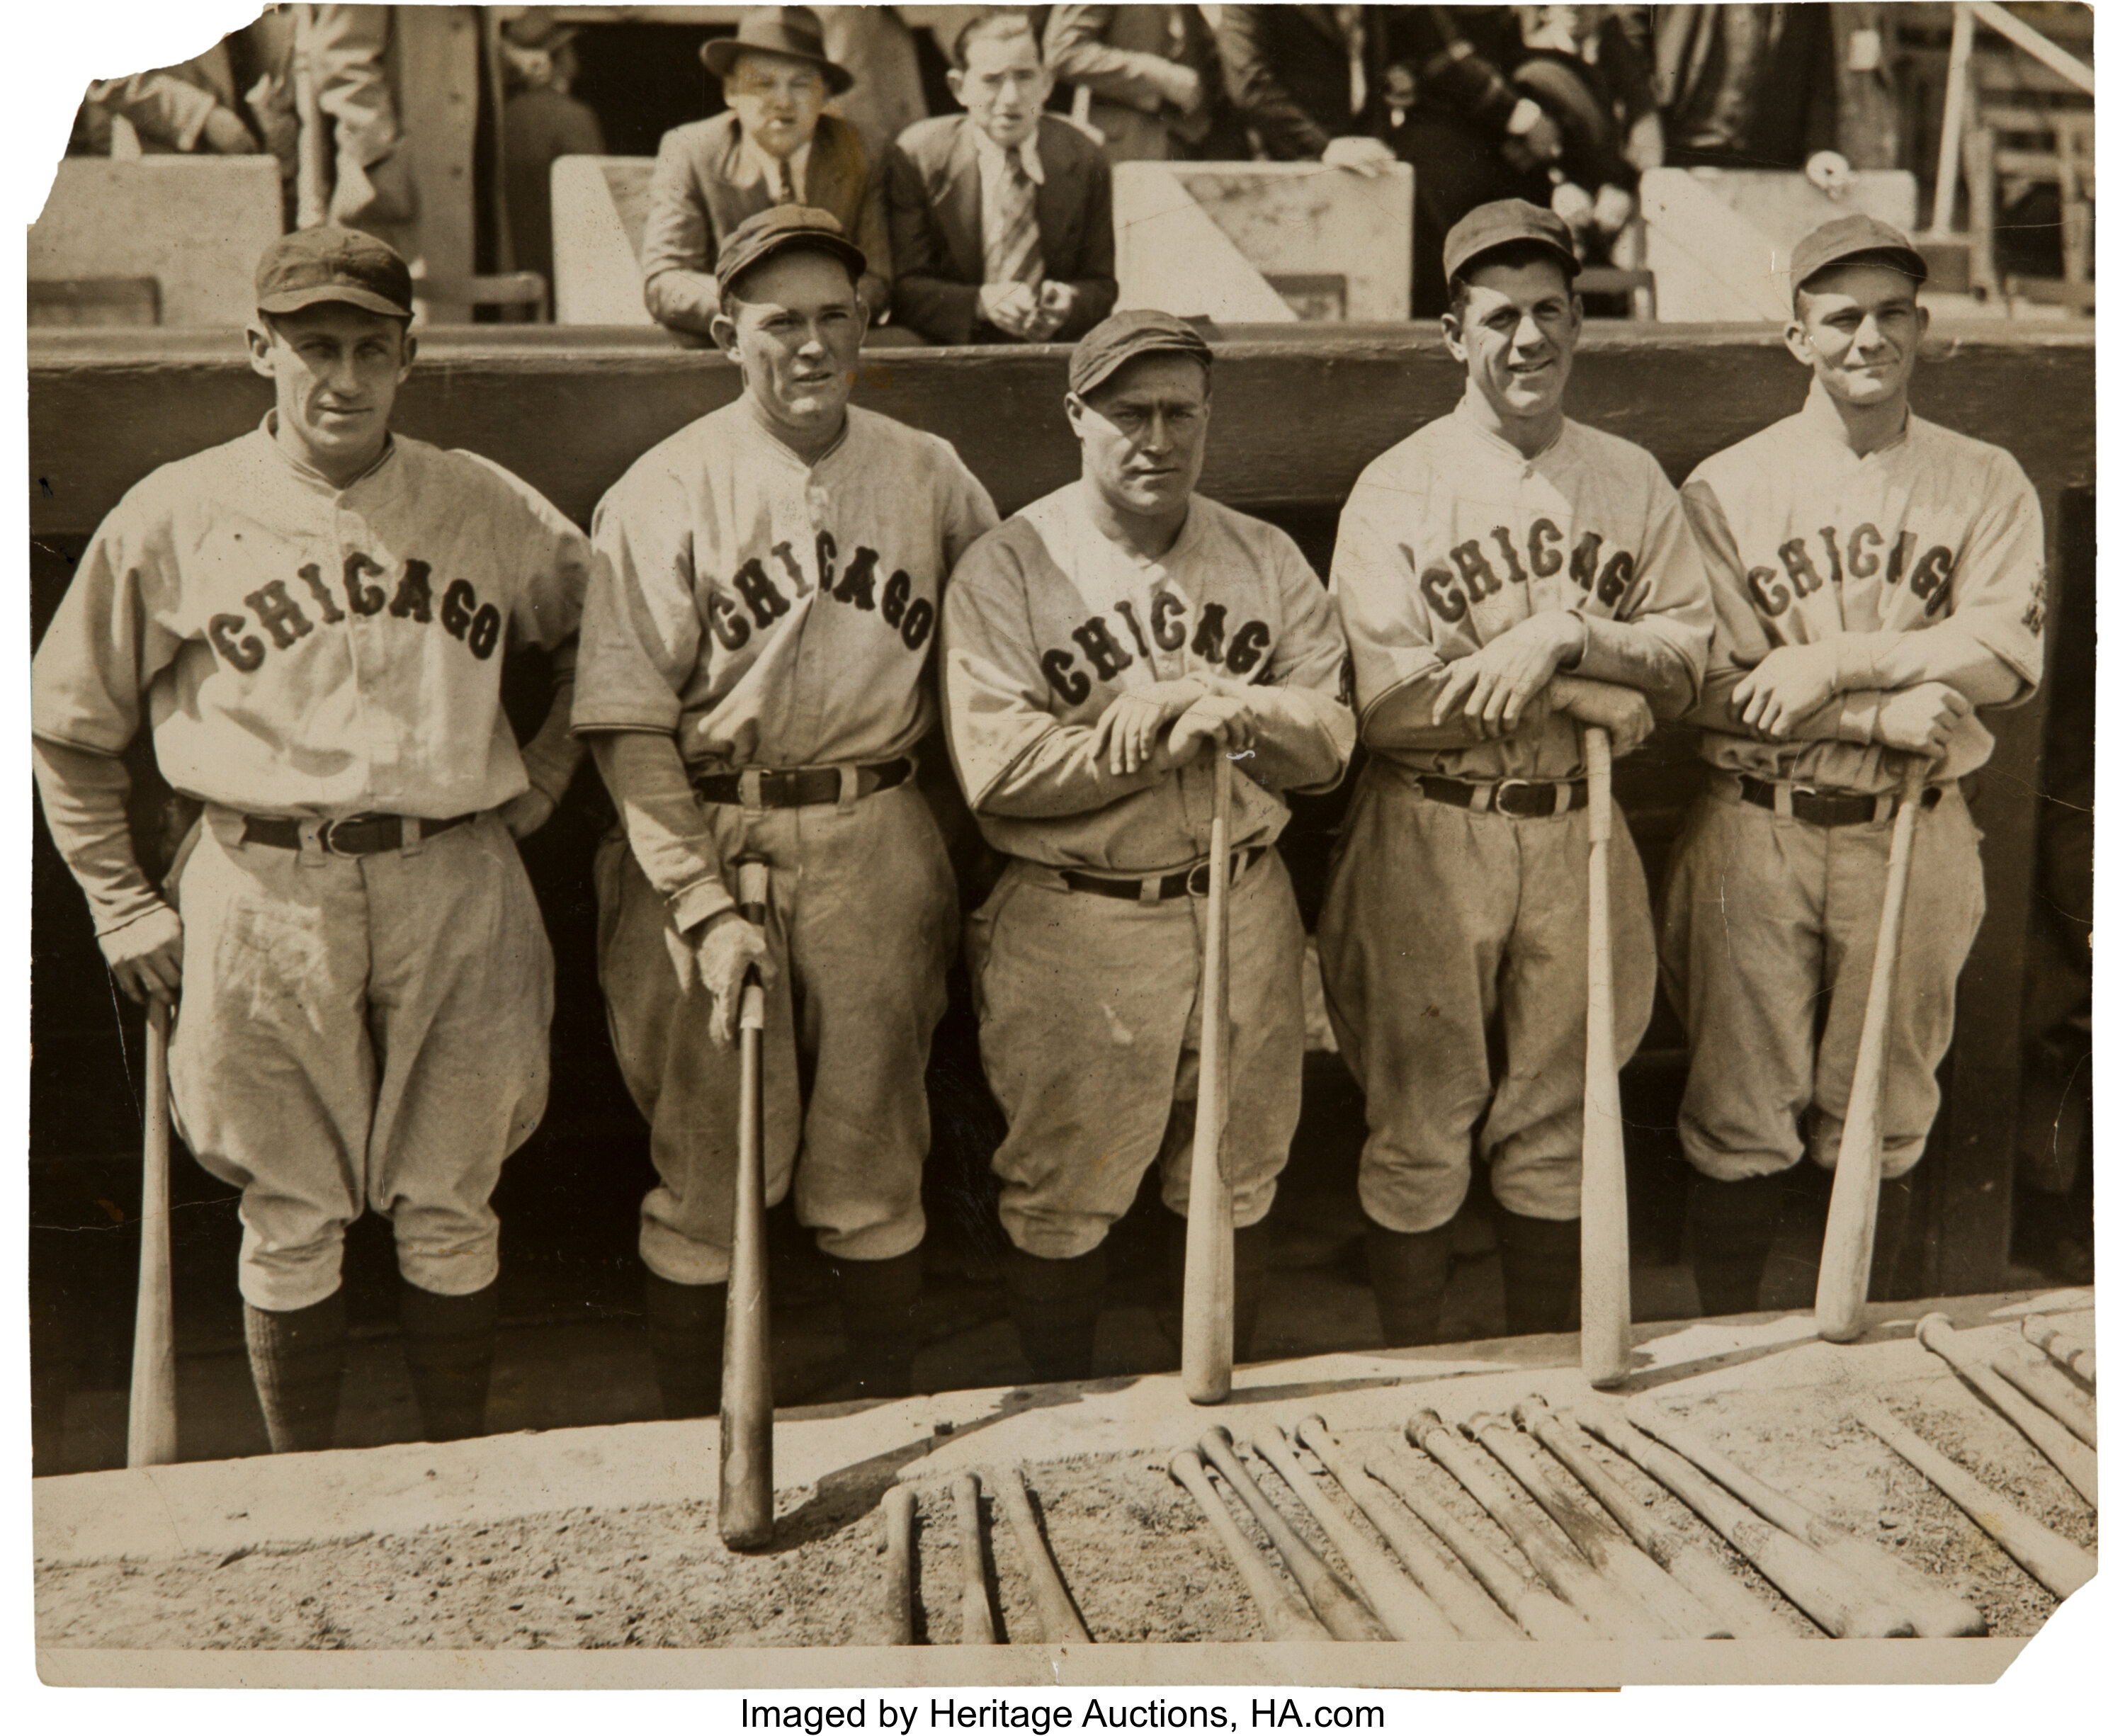 1929 Chicago Cubs Murderer's Row Original News Photograph,, Lot #81789